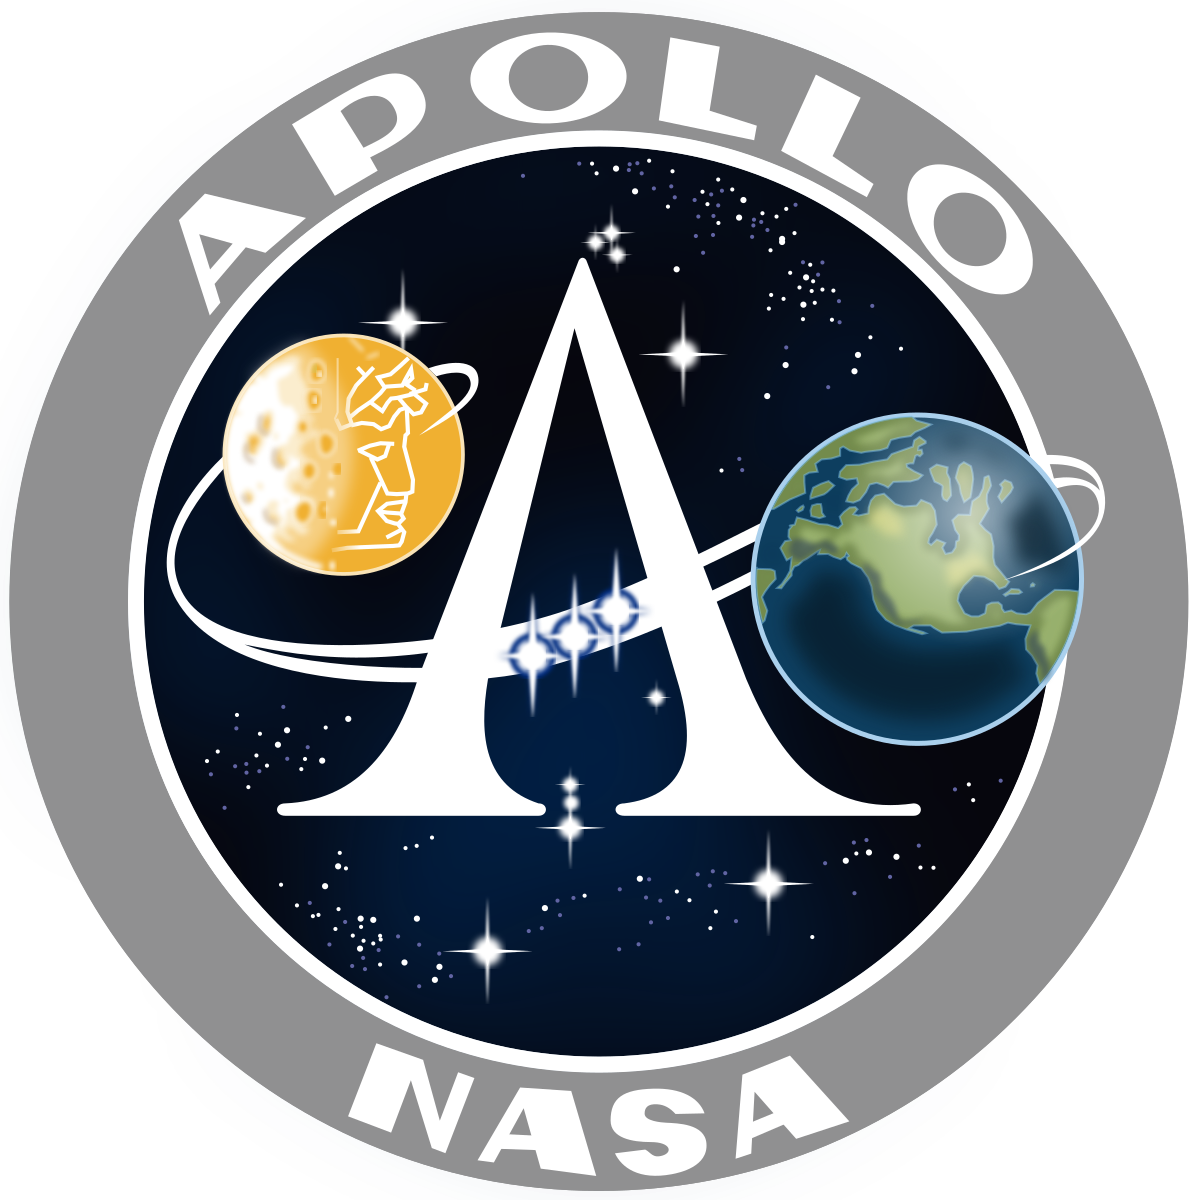 Apollo Mission Patch